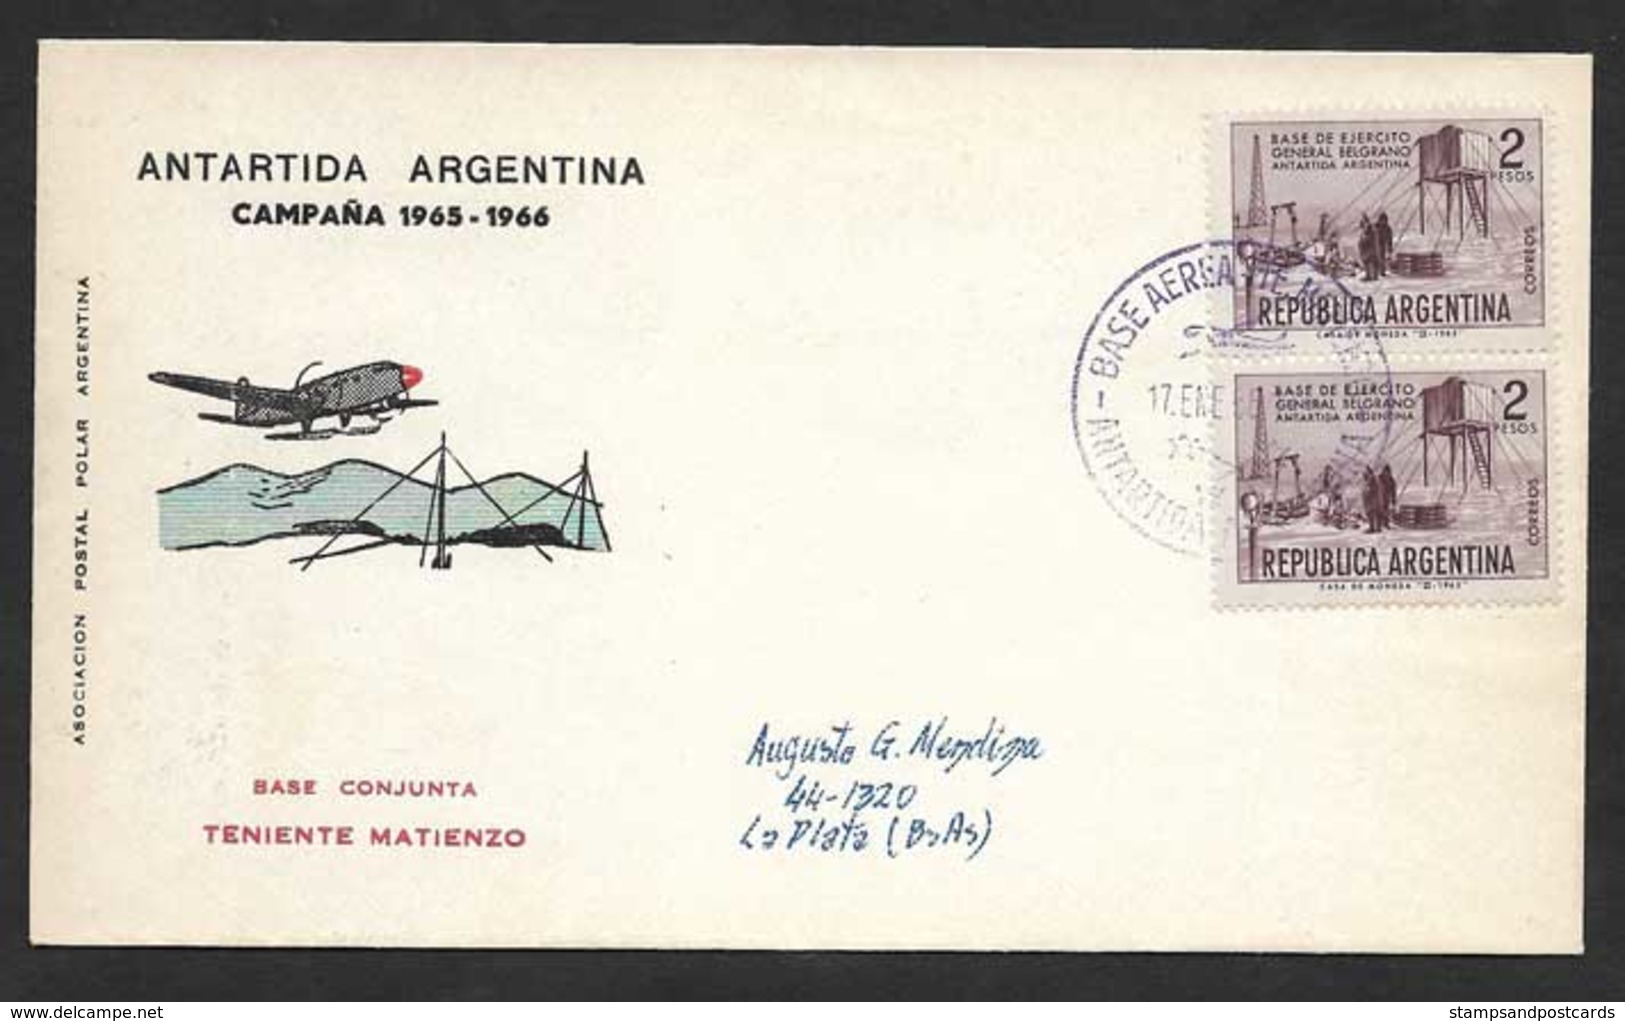 Argentine Base Aerienne Teniente Matienzo Antarctique 1966 Argentina Antartic Aerial Base - Polare Flüge